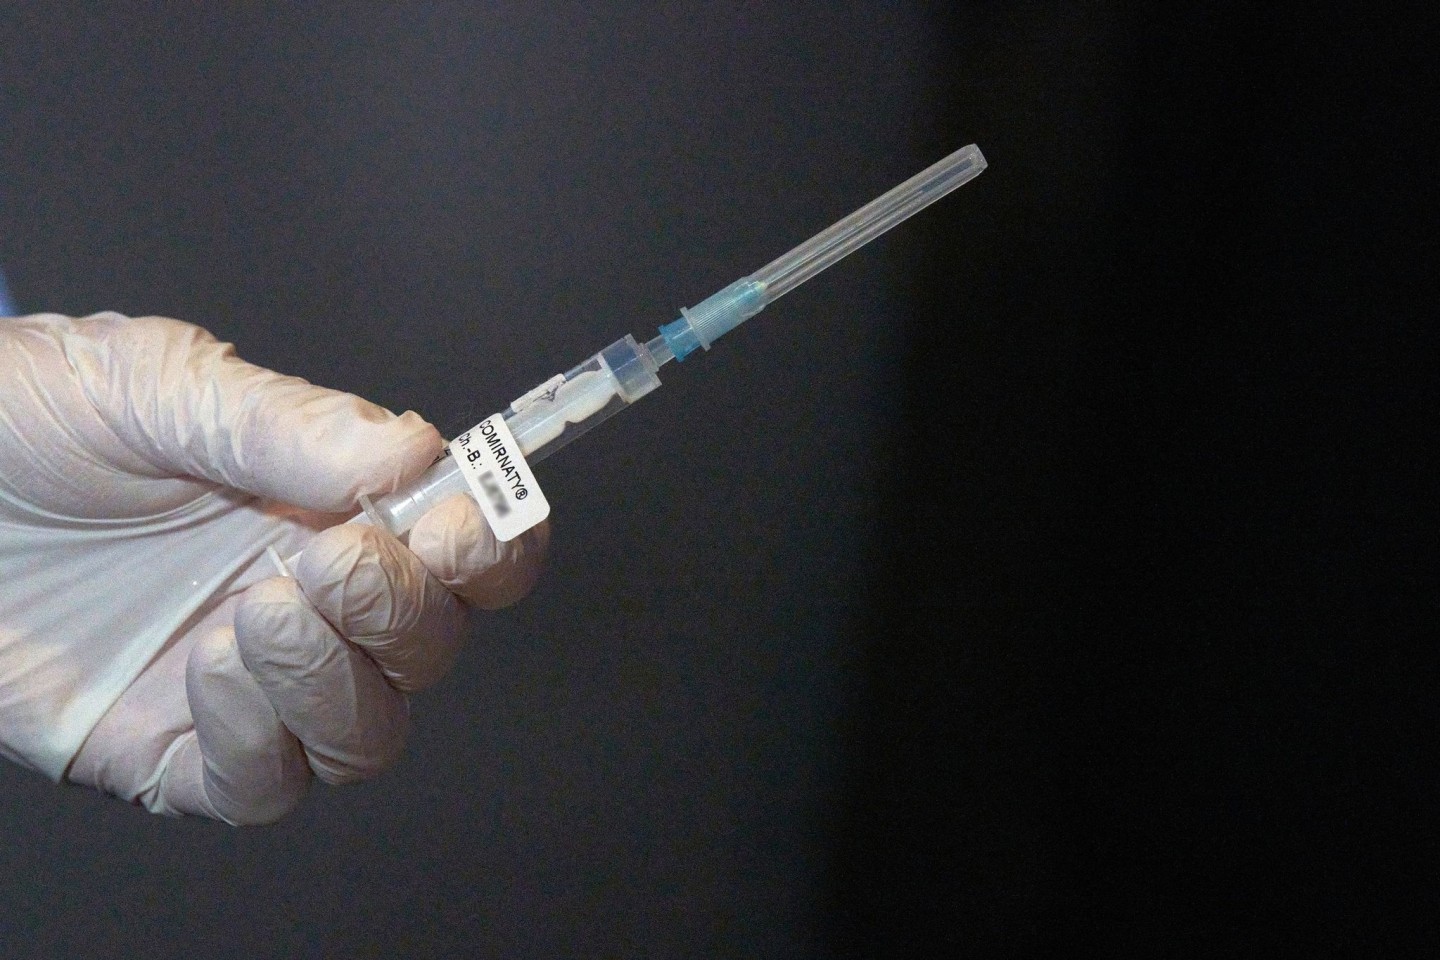 Eine Mitarbeiterin des Impfteams in Koblenz überprüft vor Beginn der Corona-Impfungen eine Spritze mit dem Impfstoff gegen Covid-19.